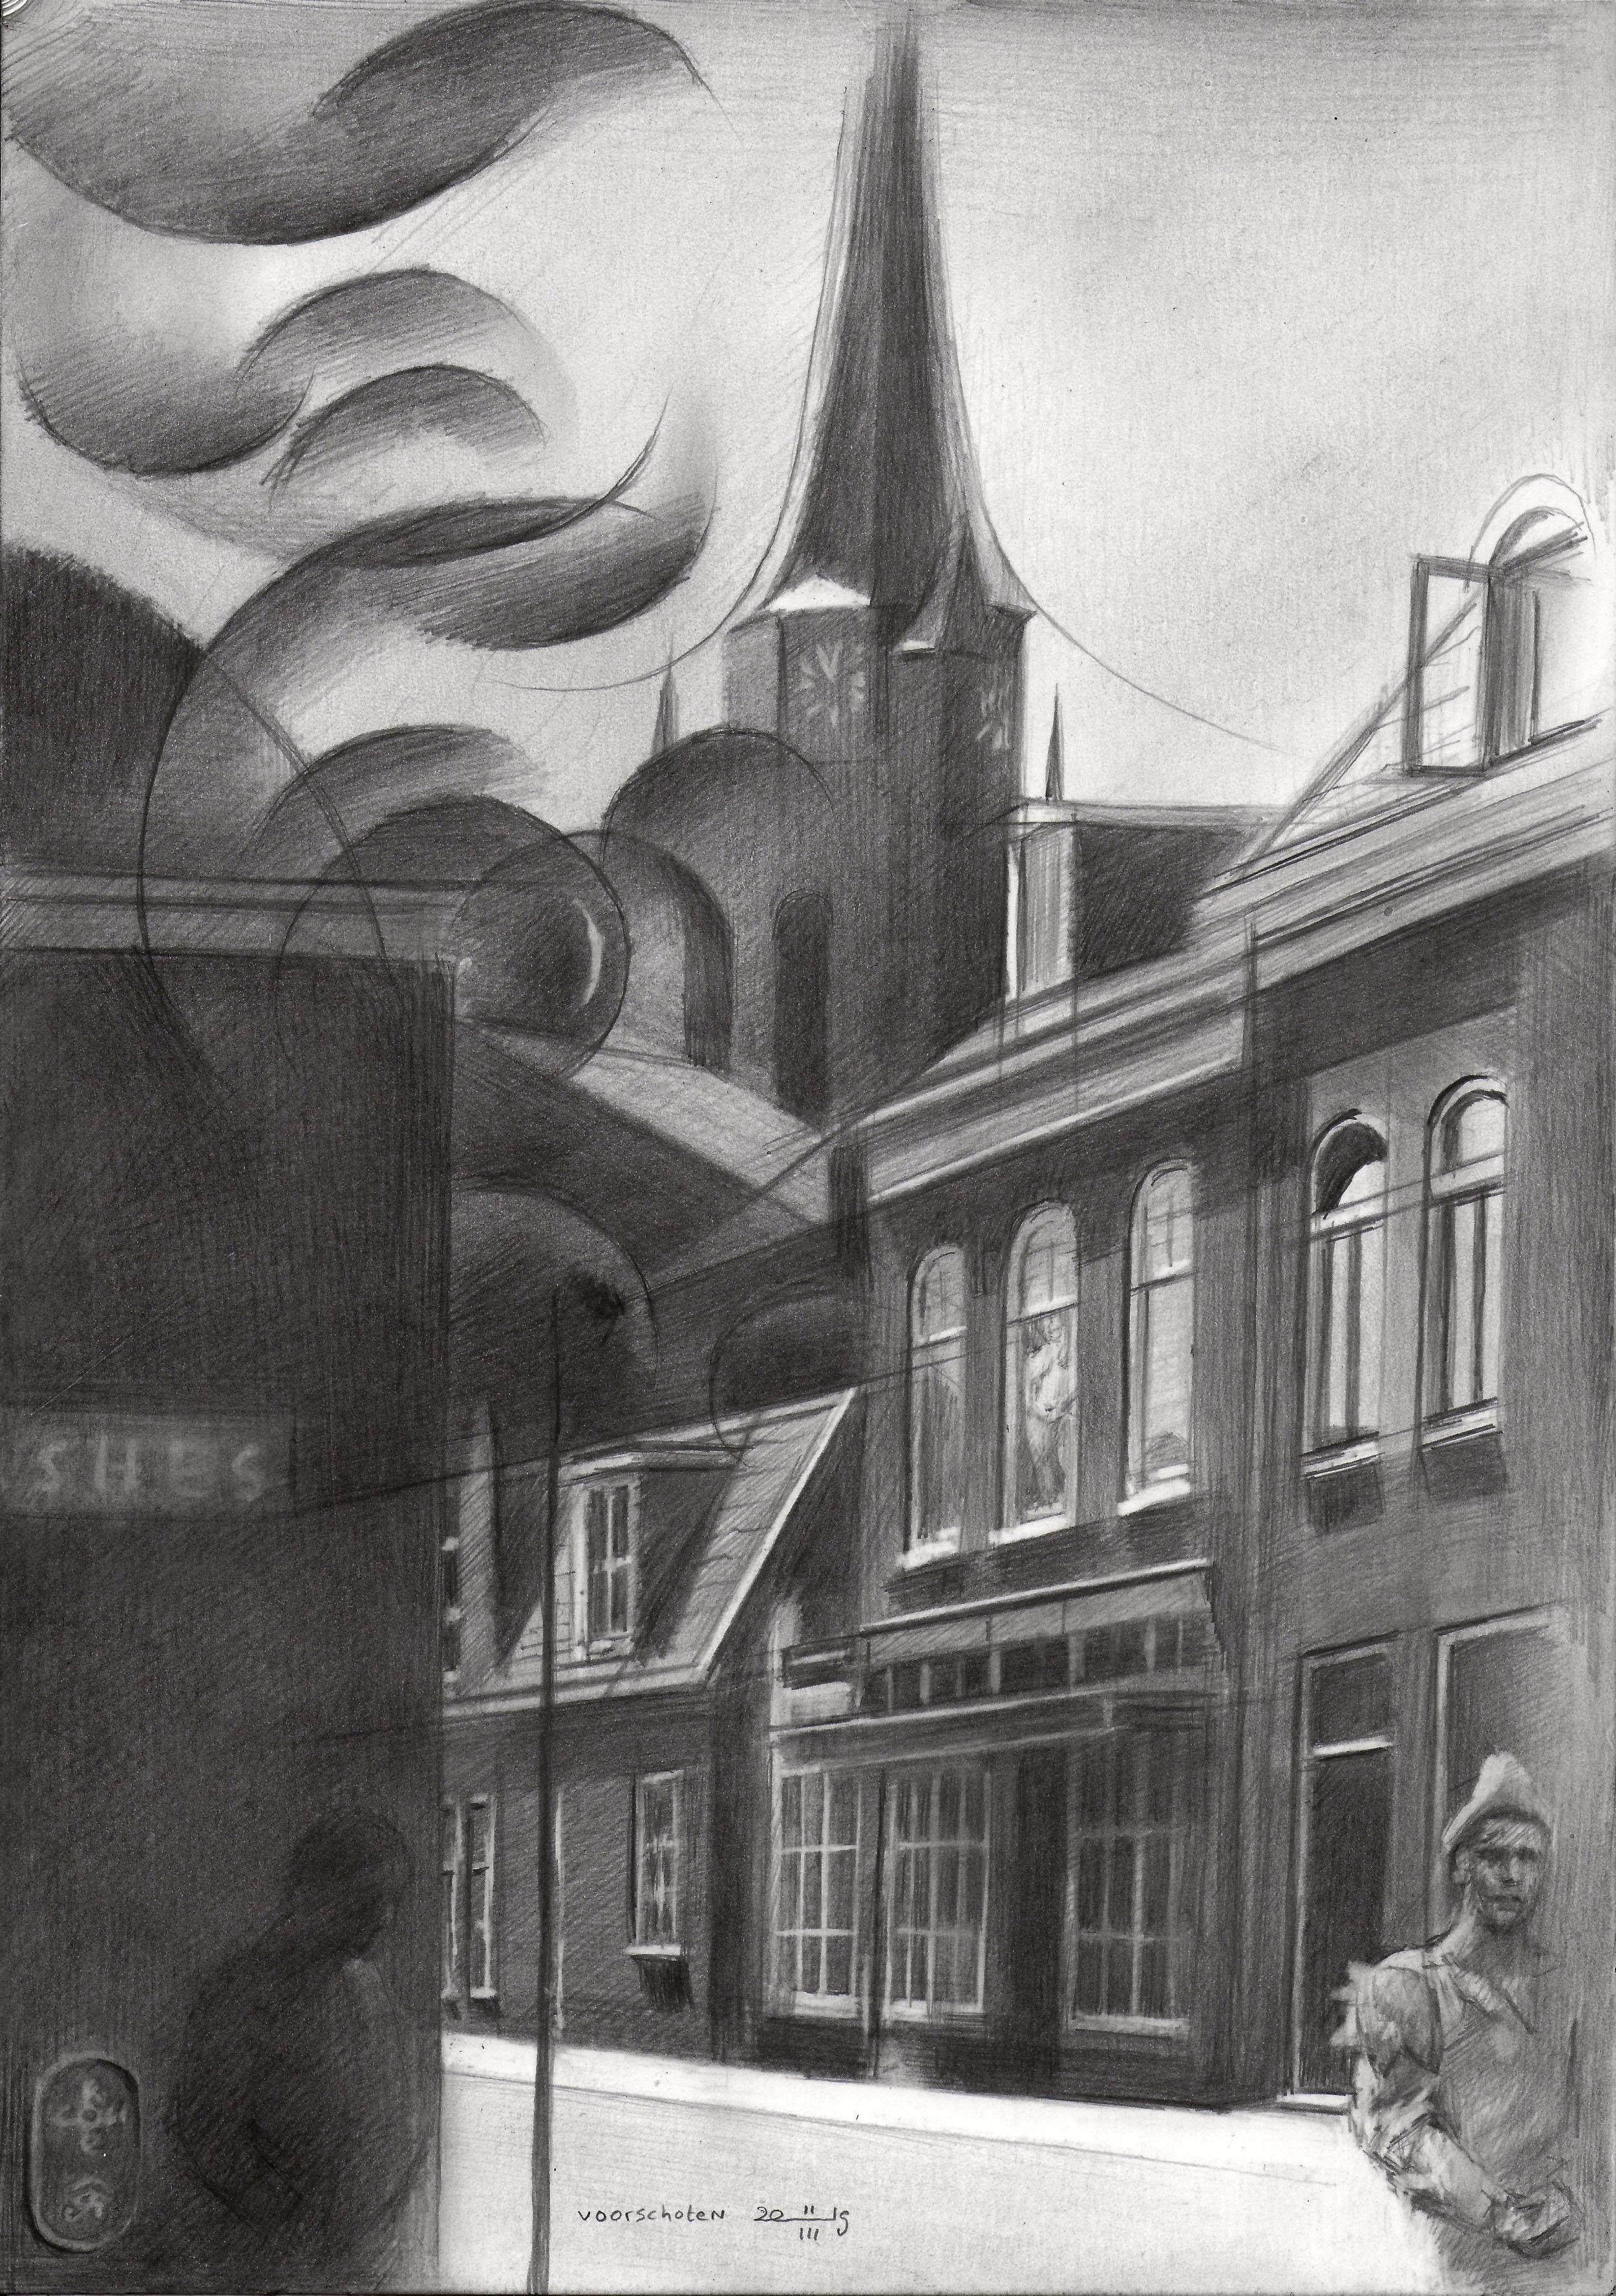 Voorschoten - 11-03-19, Zeichnung, Bleistift/Farbstift auf Papier – Art von Corne Akkers